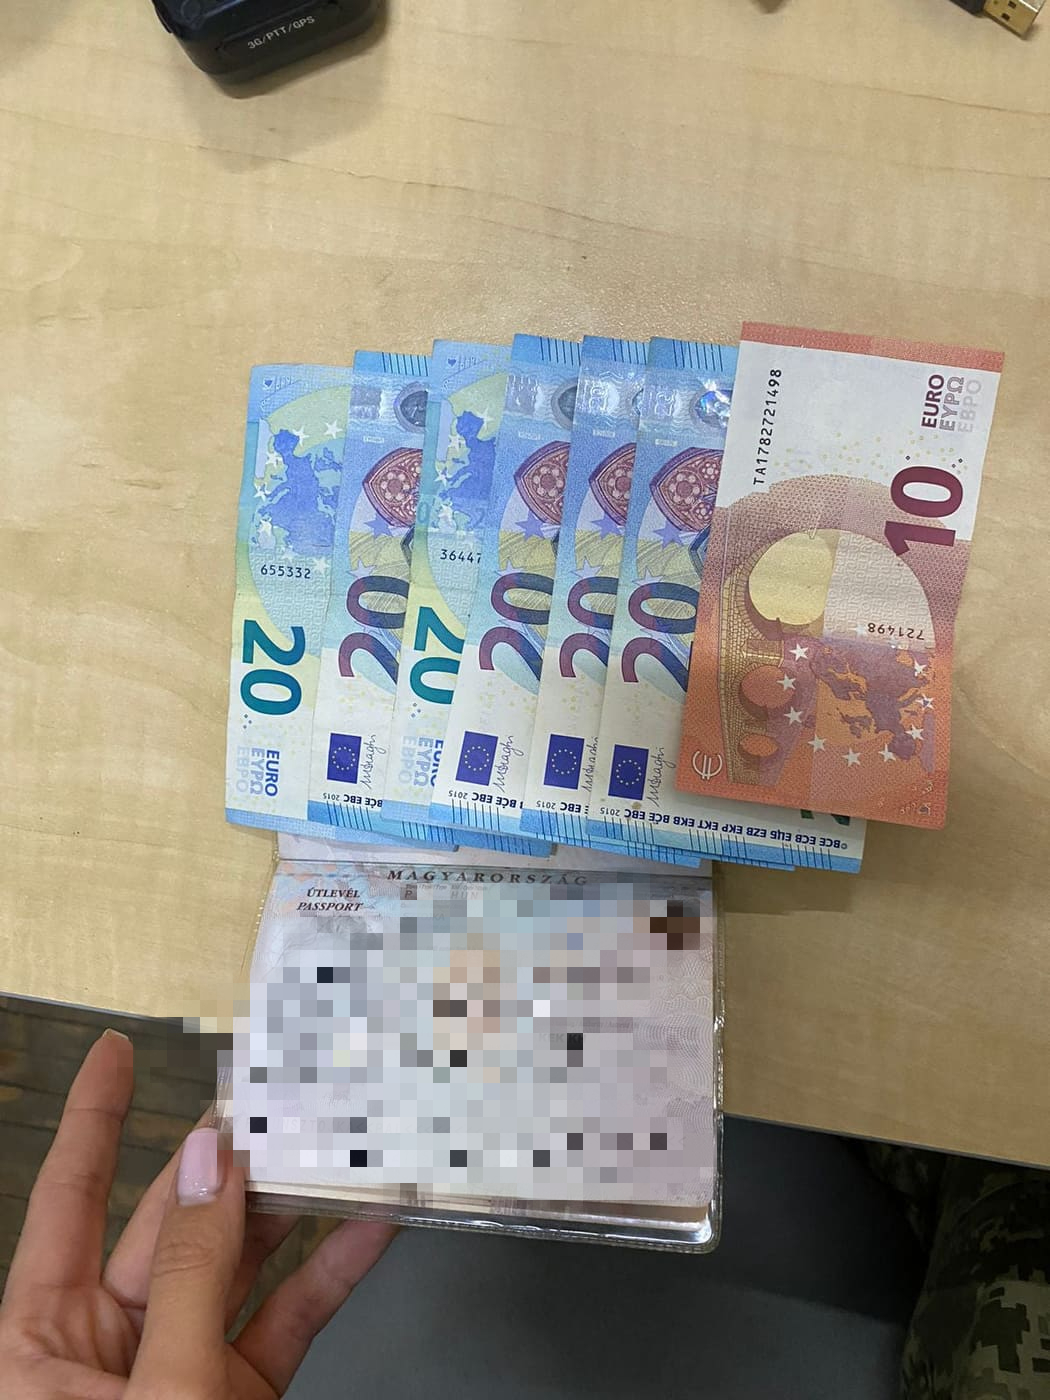 130 євро хабаря пропонував угорець в пункті пропуску "Лужанка" на Закарпатті (ФОТО)